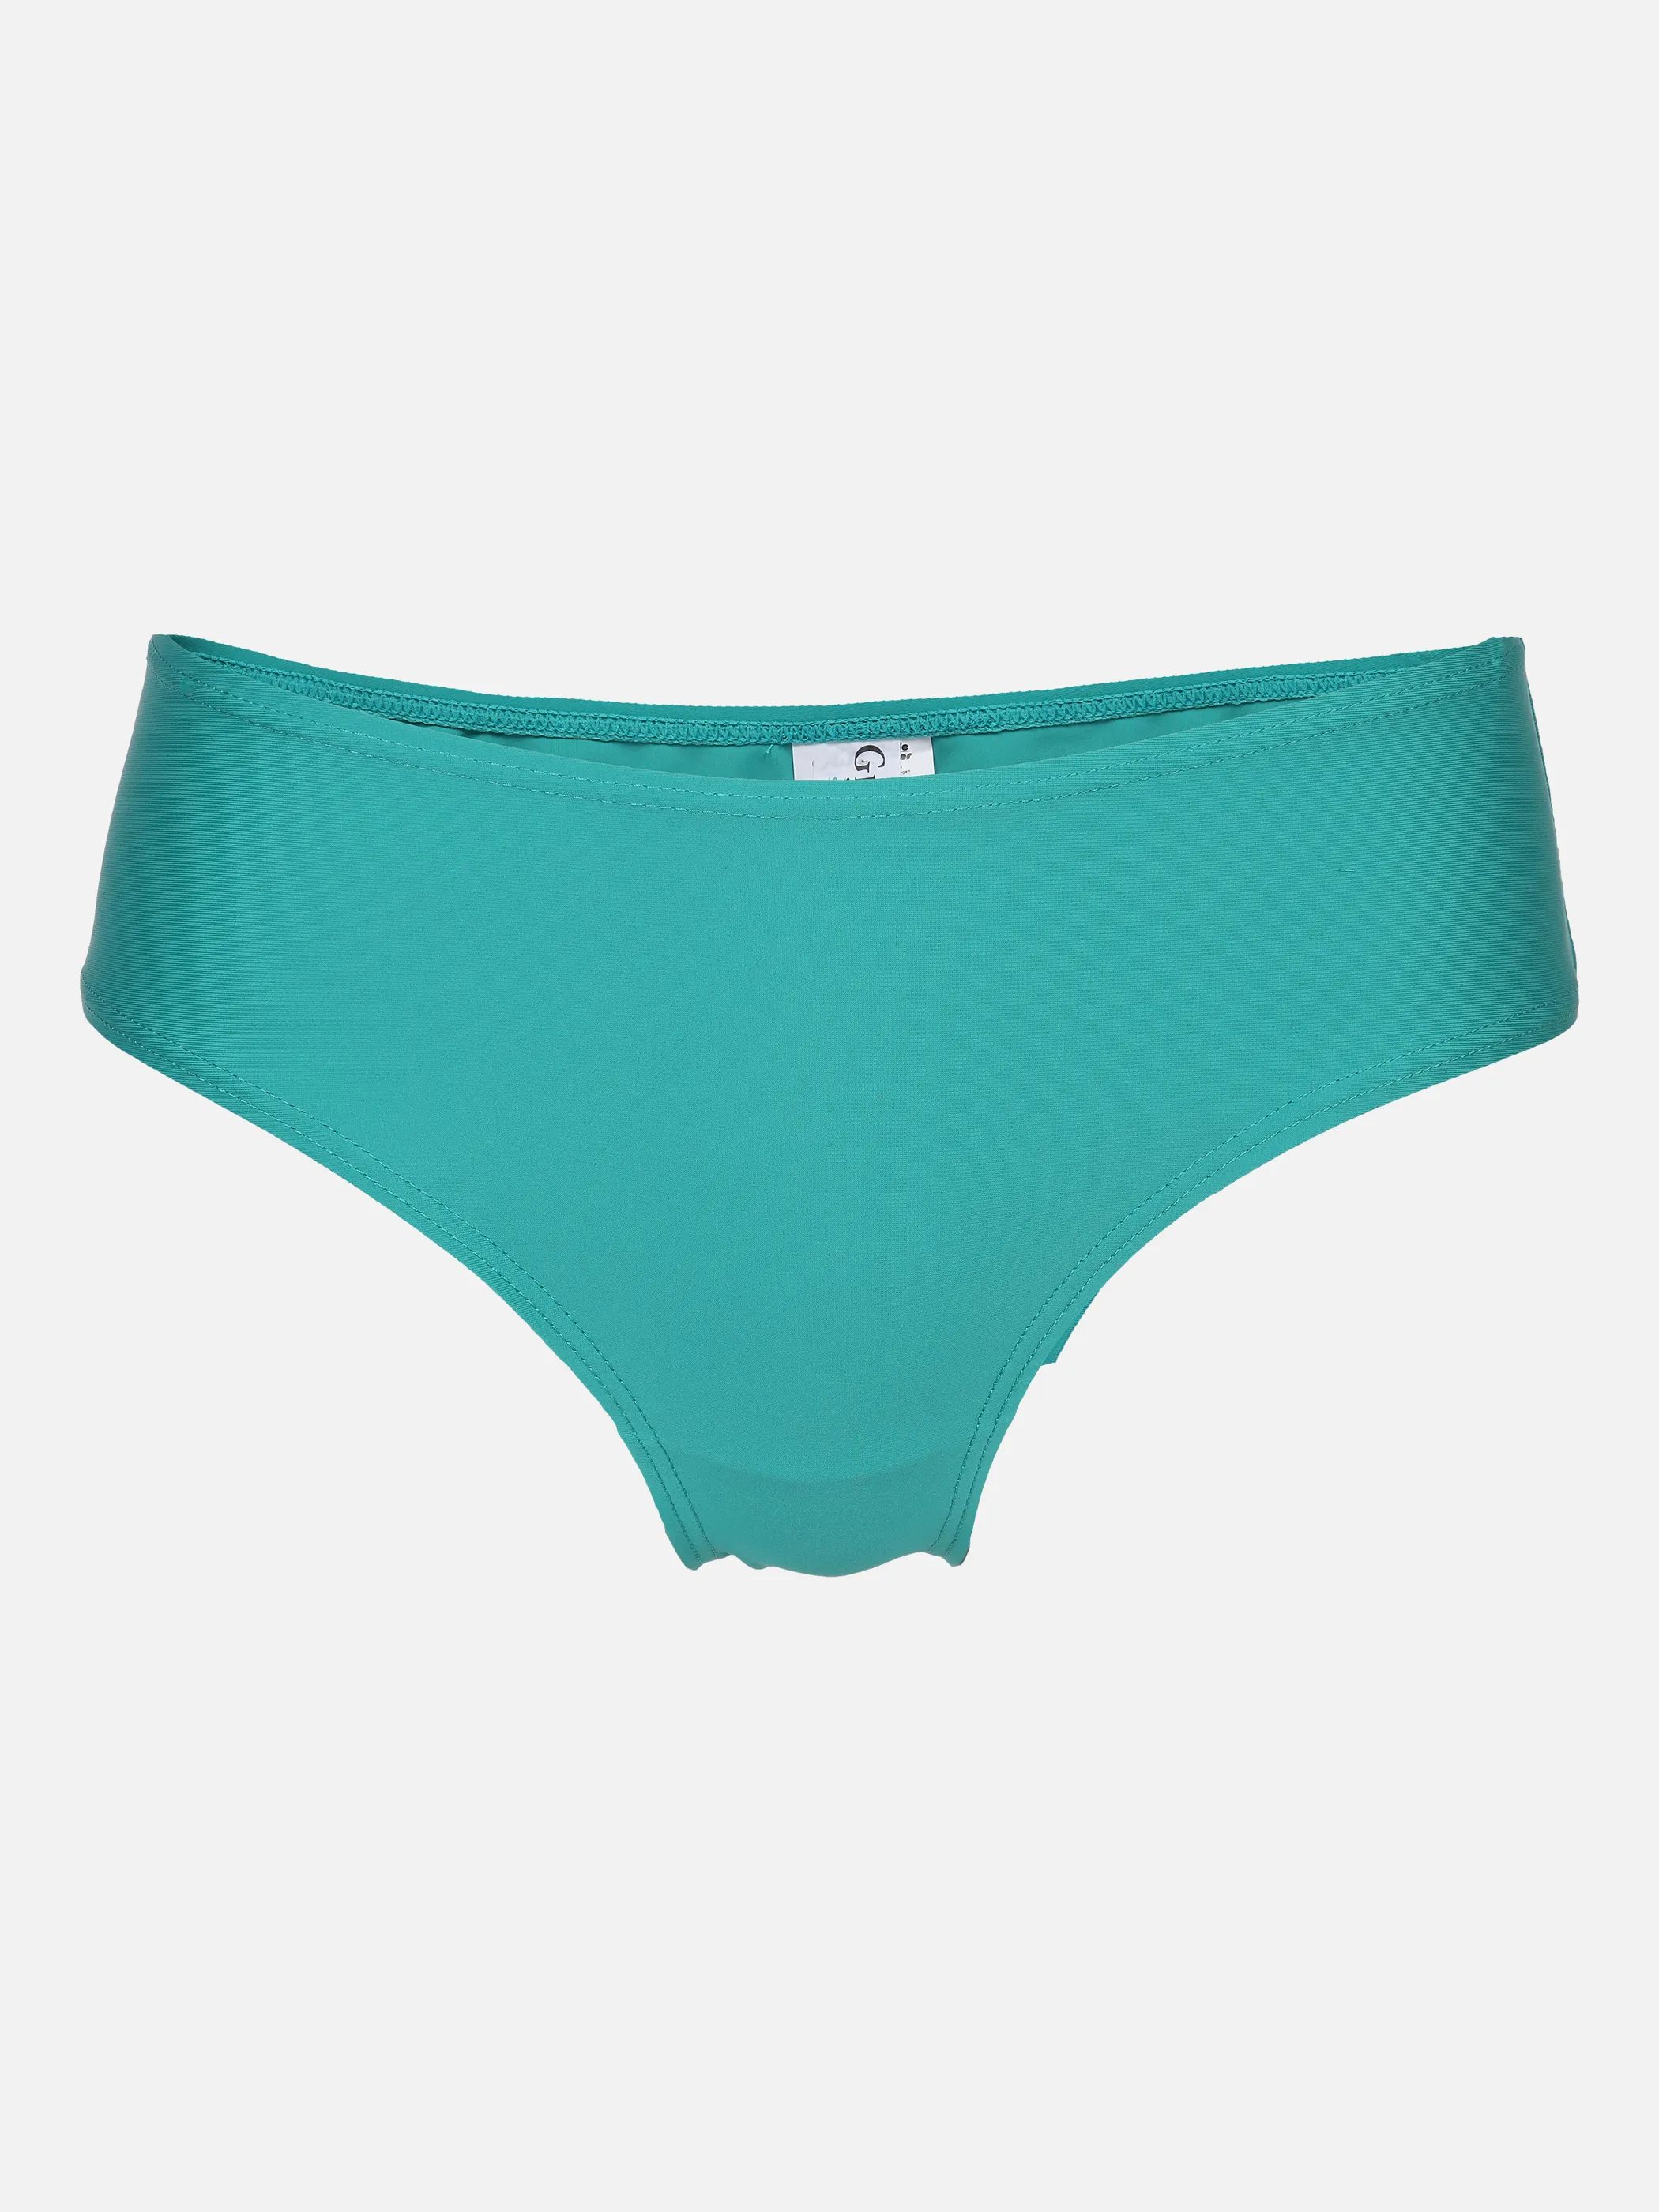 Grinario Sports Da-Bikini Hose Grün 877038 GREEN 1